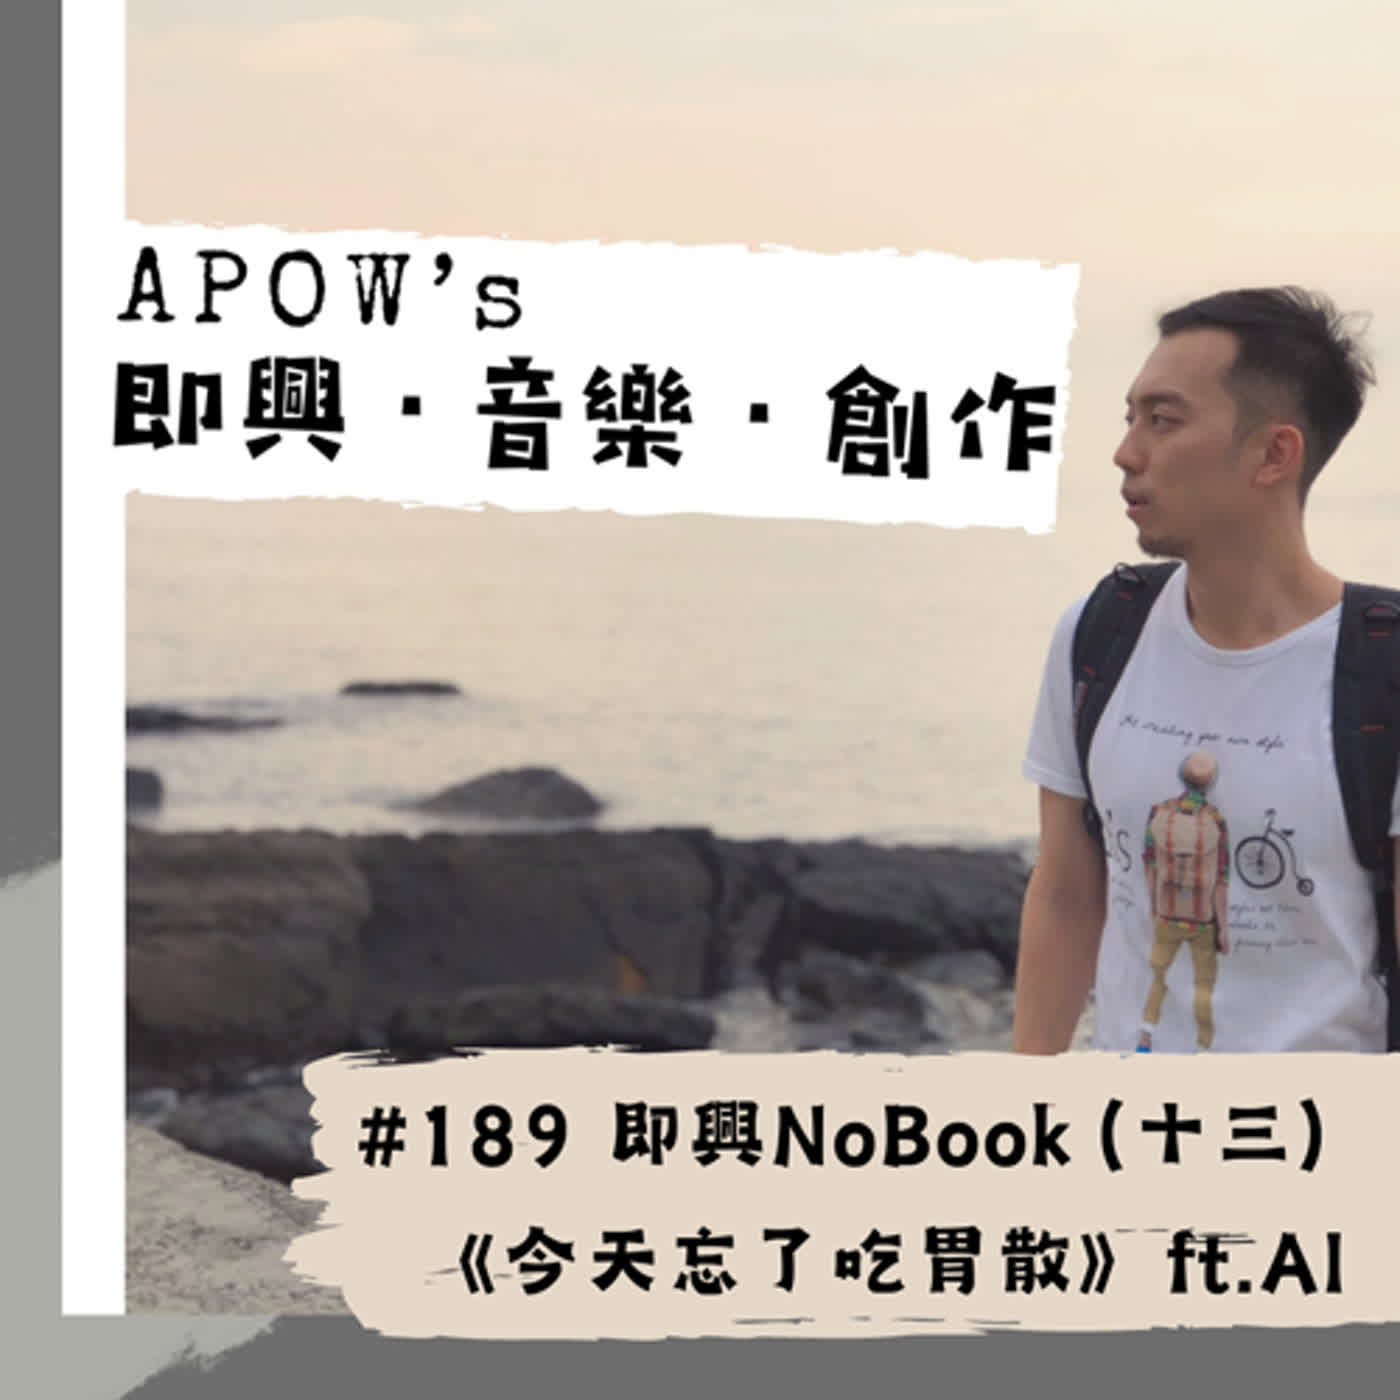 ＃189 即興NoBook（十三）黑暗小說《今天忘了吃胃散》 feat. MixerBox ChatAI